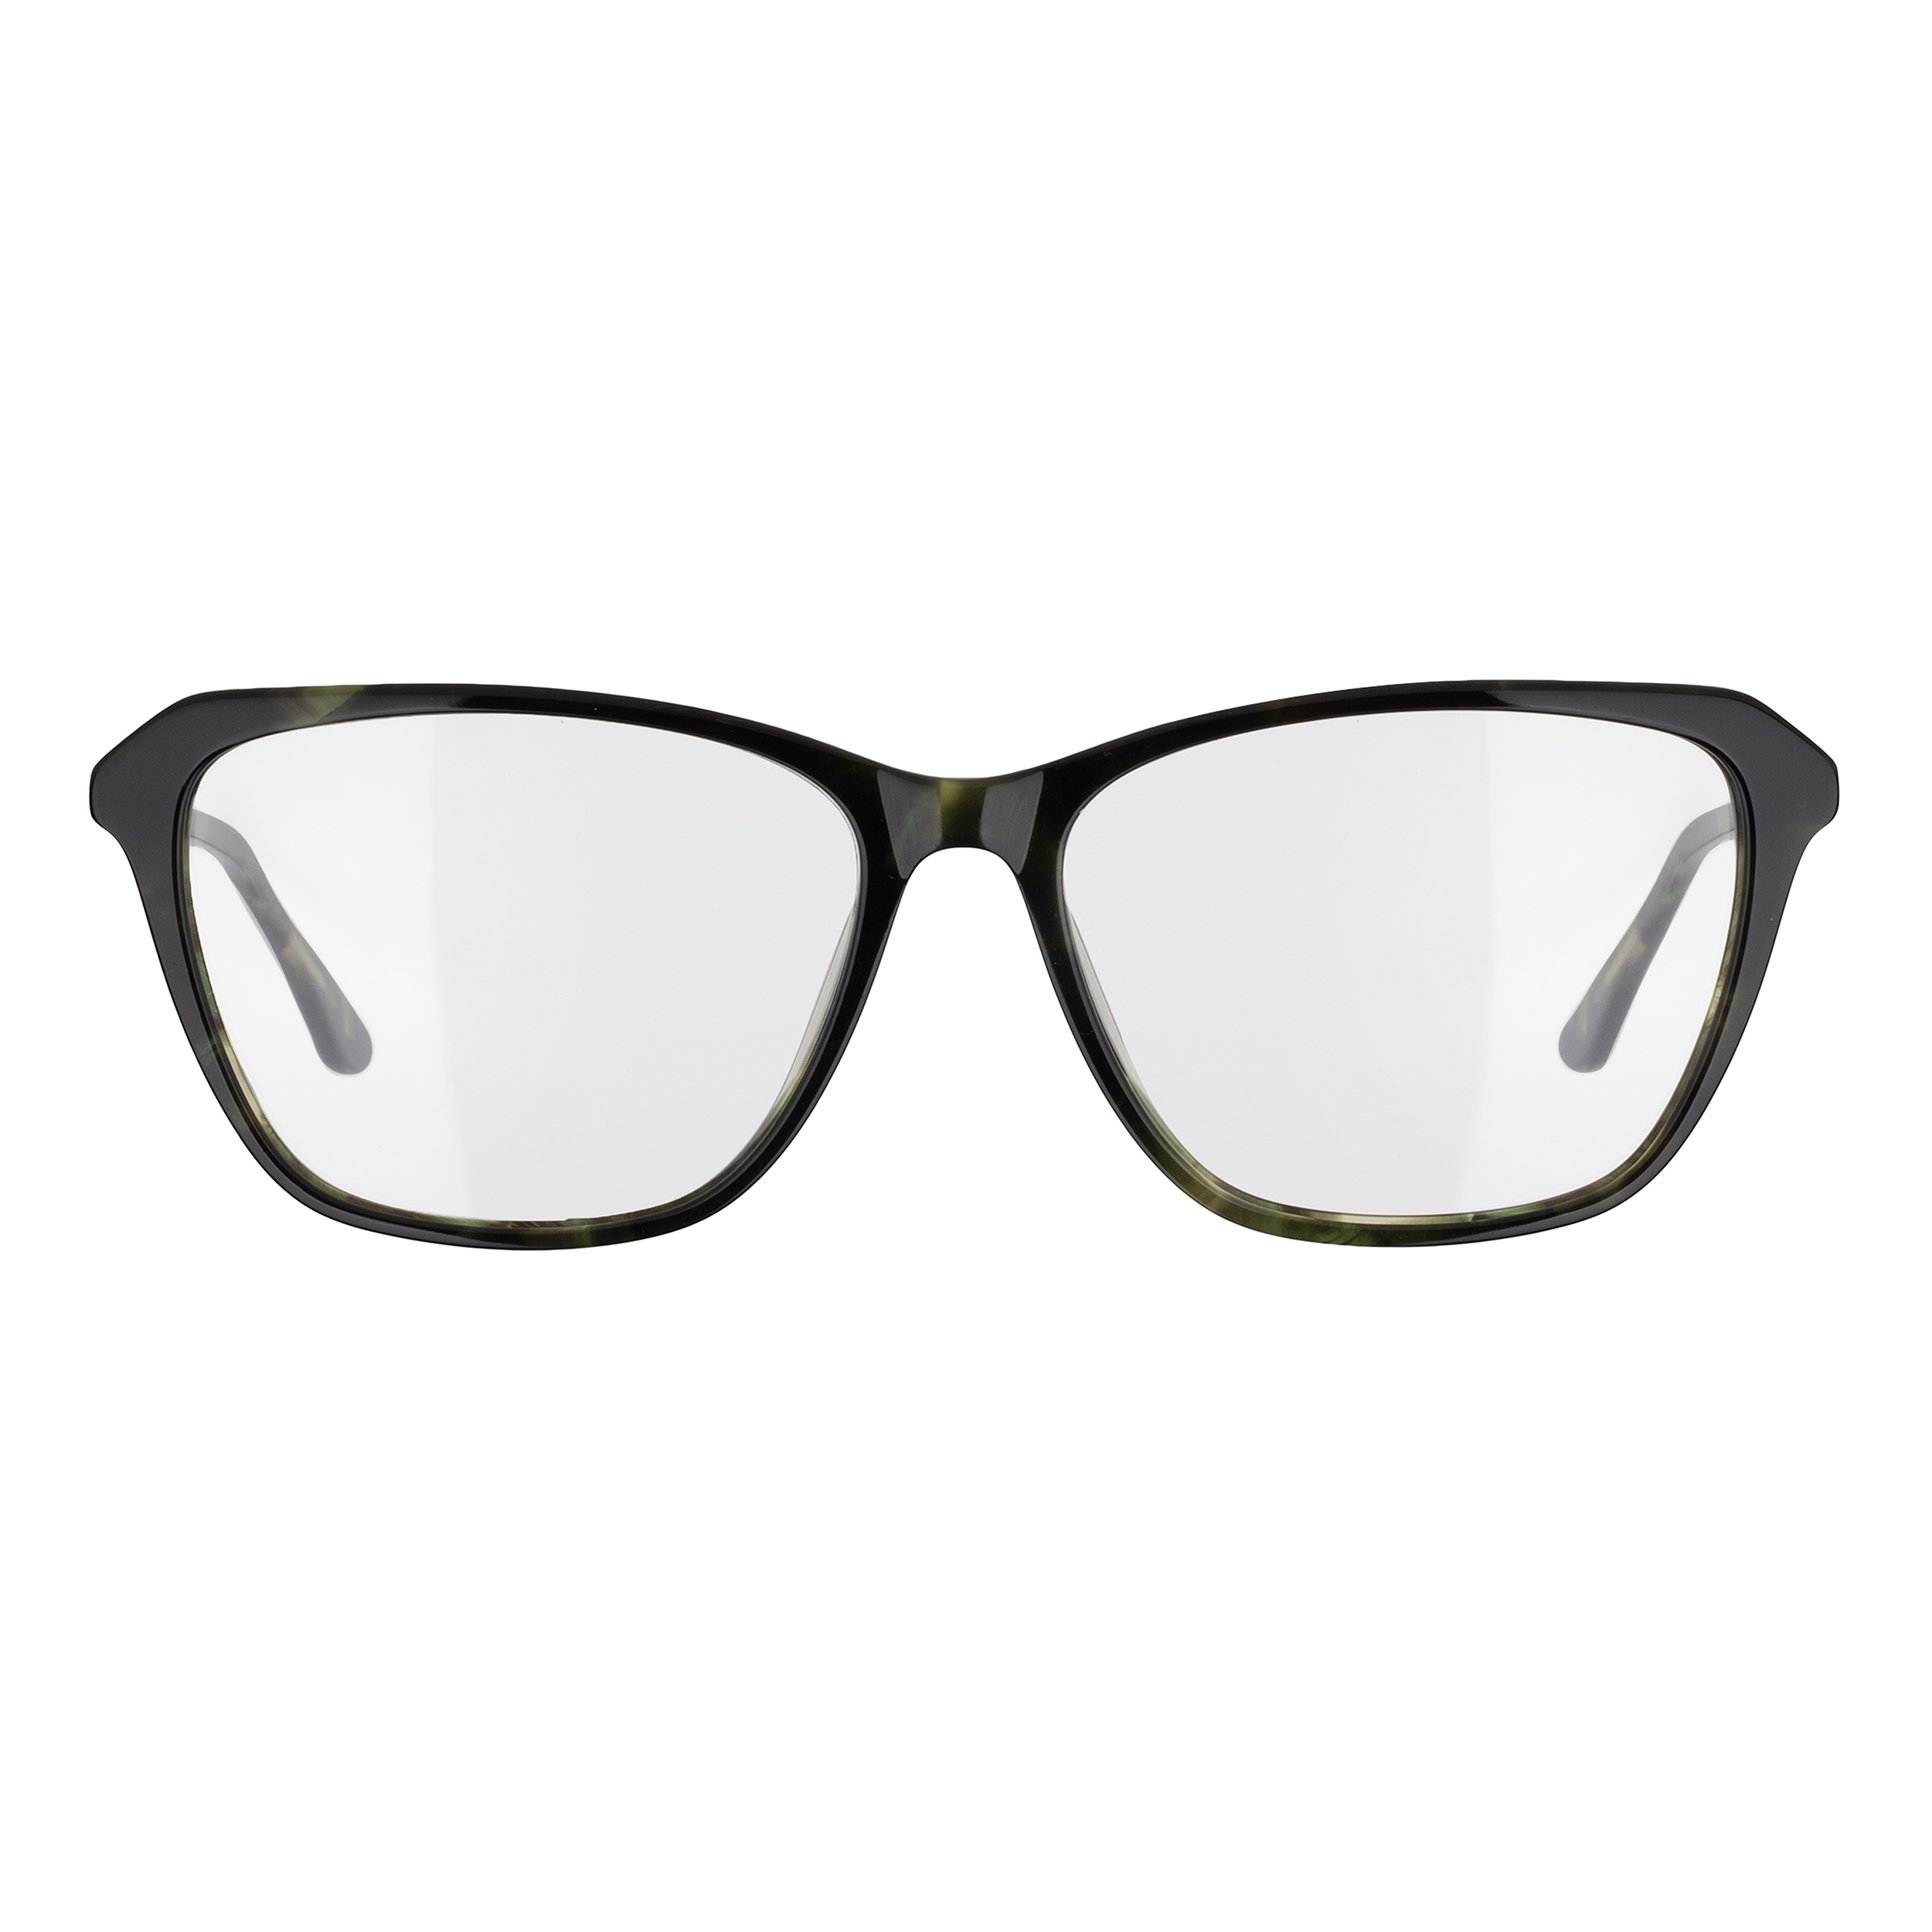 فریم عینک طبی مدل CB5188C5 Acetate Sacramento Pattern